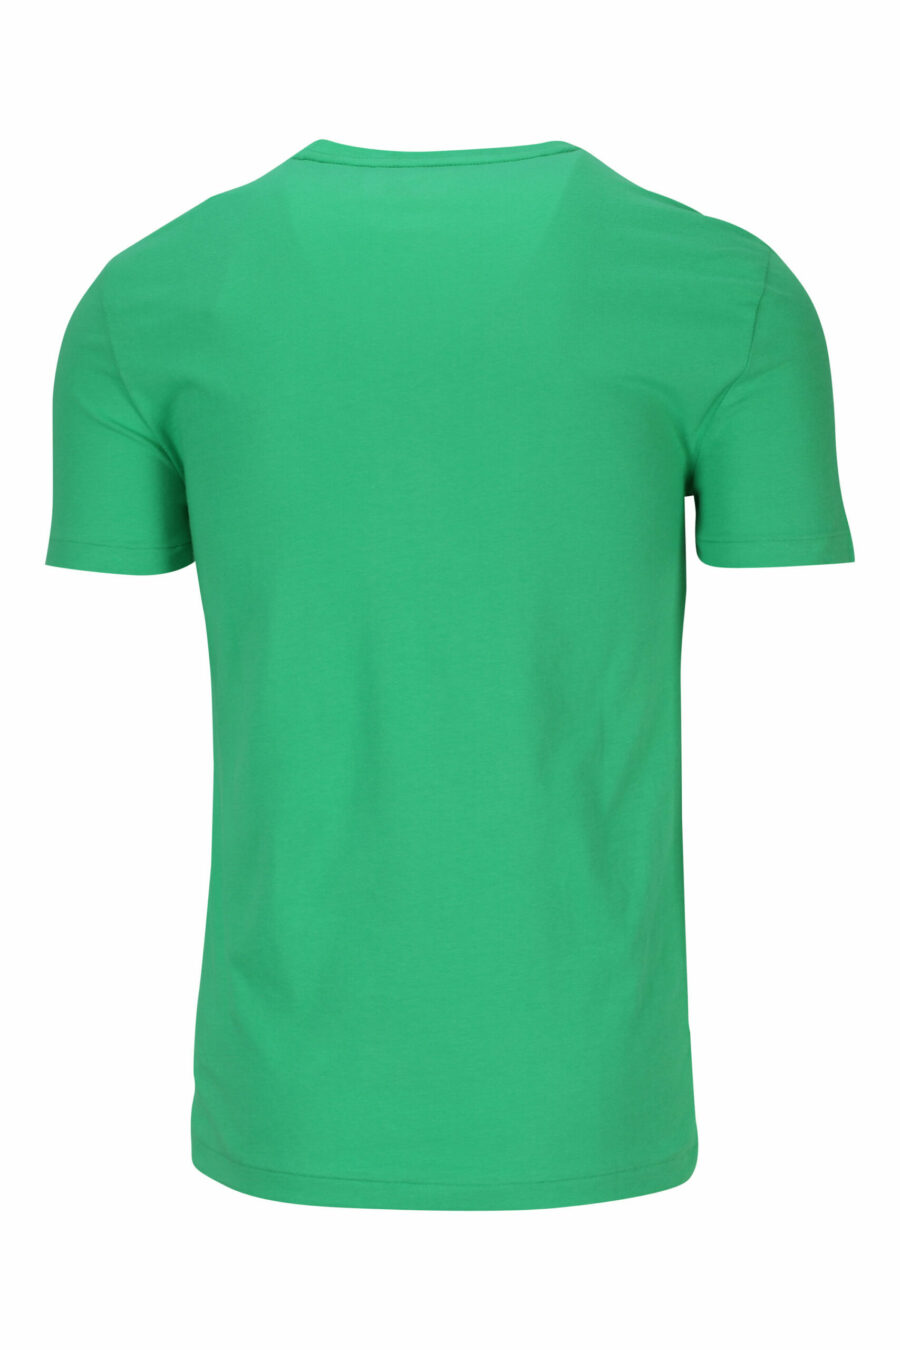 T-shirt verde e amarela com mini-logotipo "polo" - 3616535653825 1 à escala